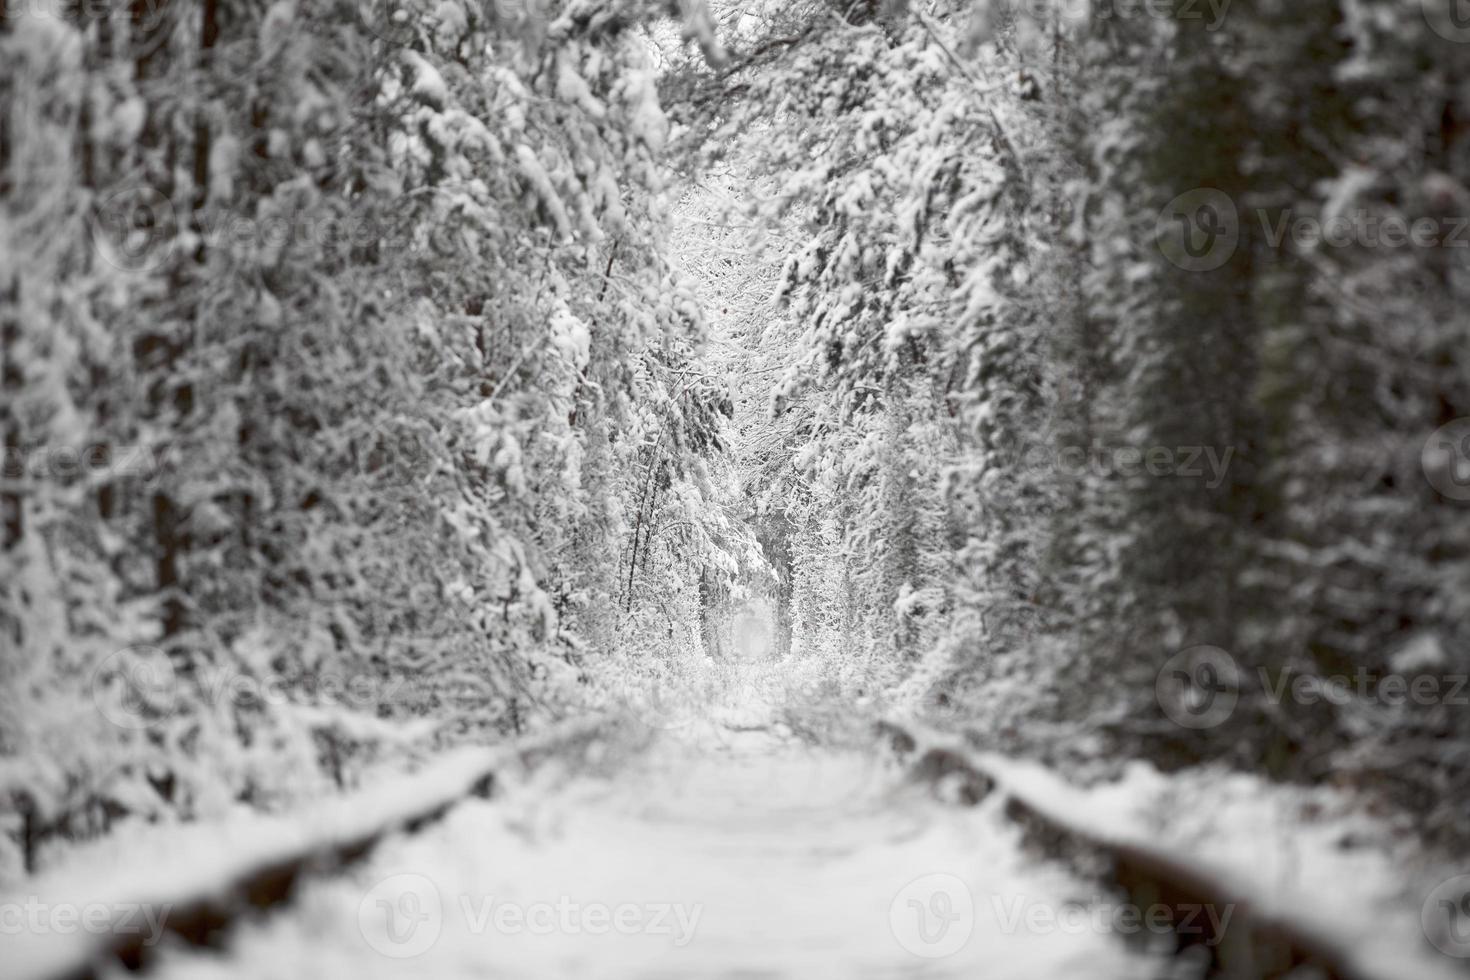 inverno no túnel natural do amor com estrada ferroviária. Klevan, Ucrânia. pitoresca floresta congelada com abetos e pinheiros cobertos de neve. floresta de inverno. . foto de alta qualidade